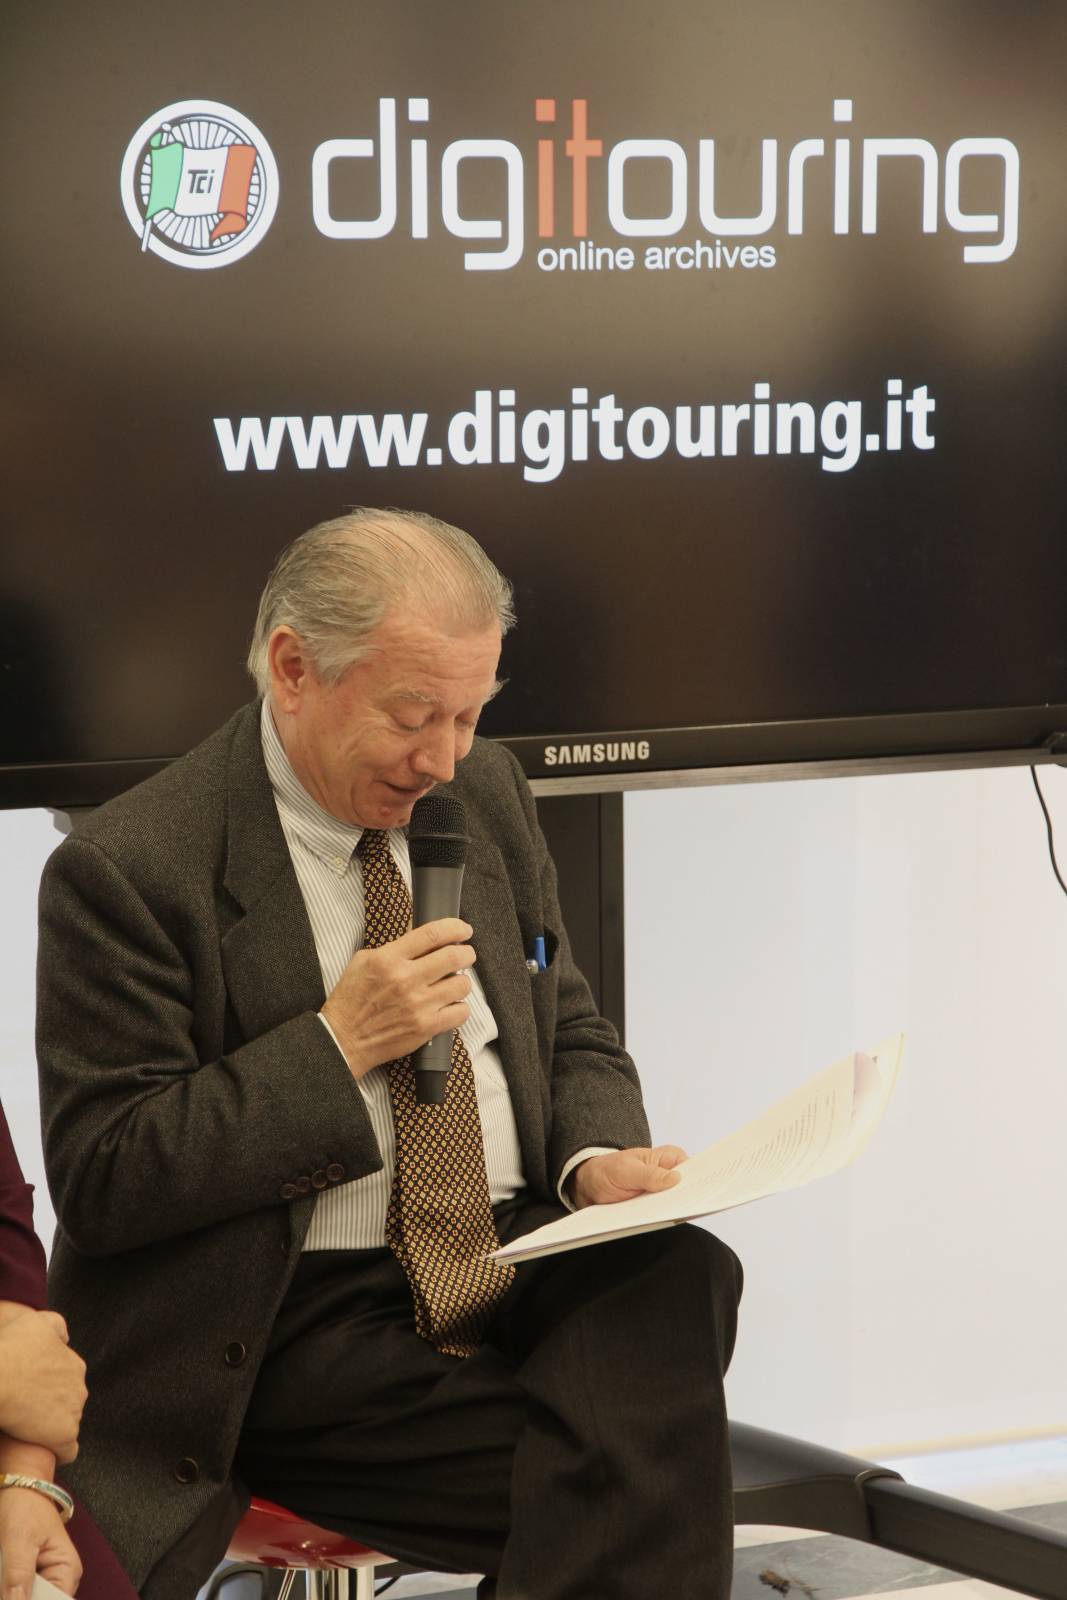 La presentazione di Digitouring alla Triennale di Milano: il presidente Tci Franco Iseppi